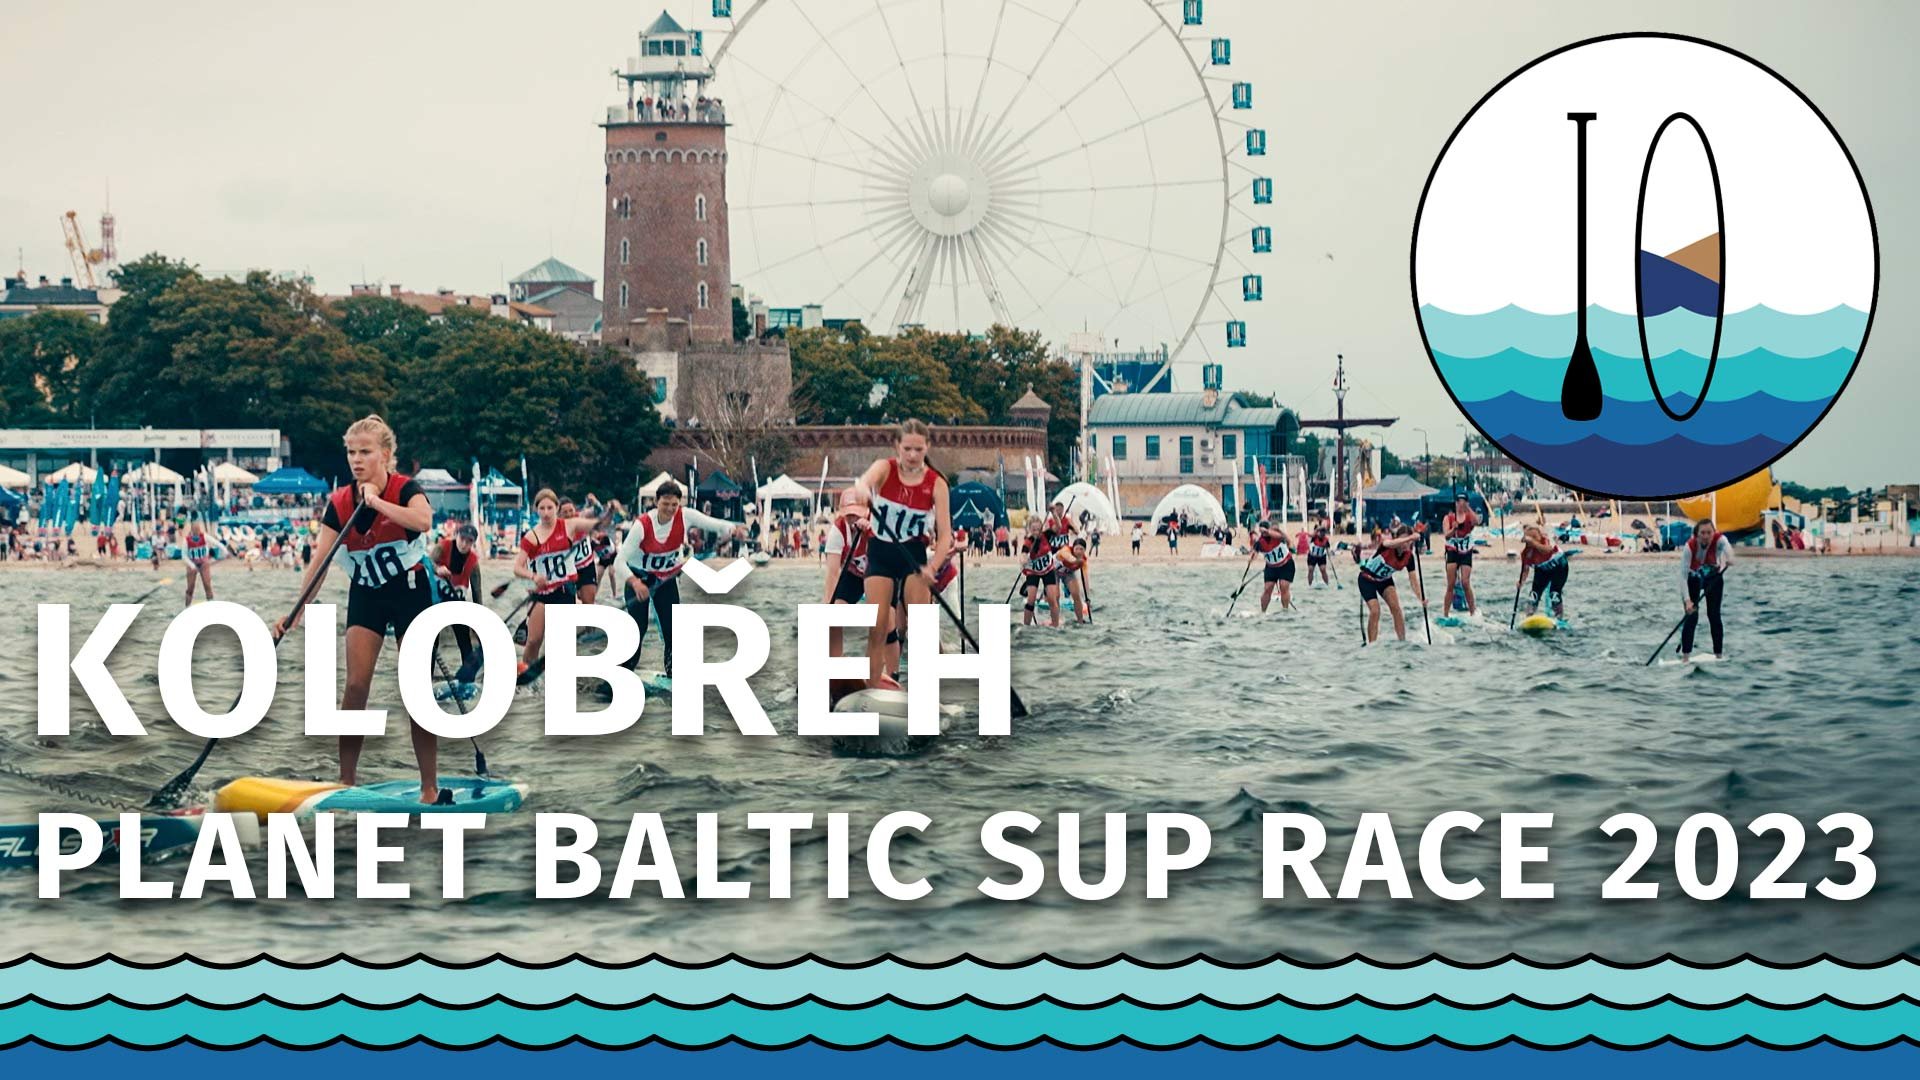 Planet Baltic SUP Race 2023 - Kolobřeh